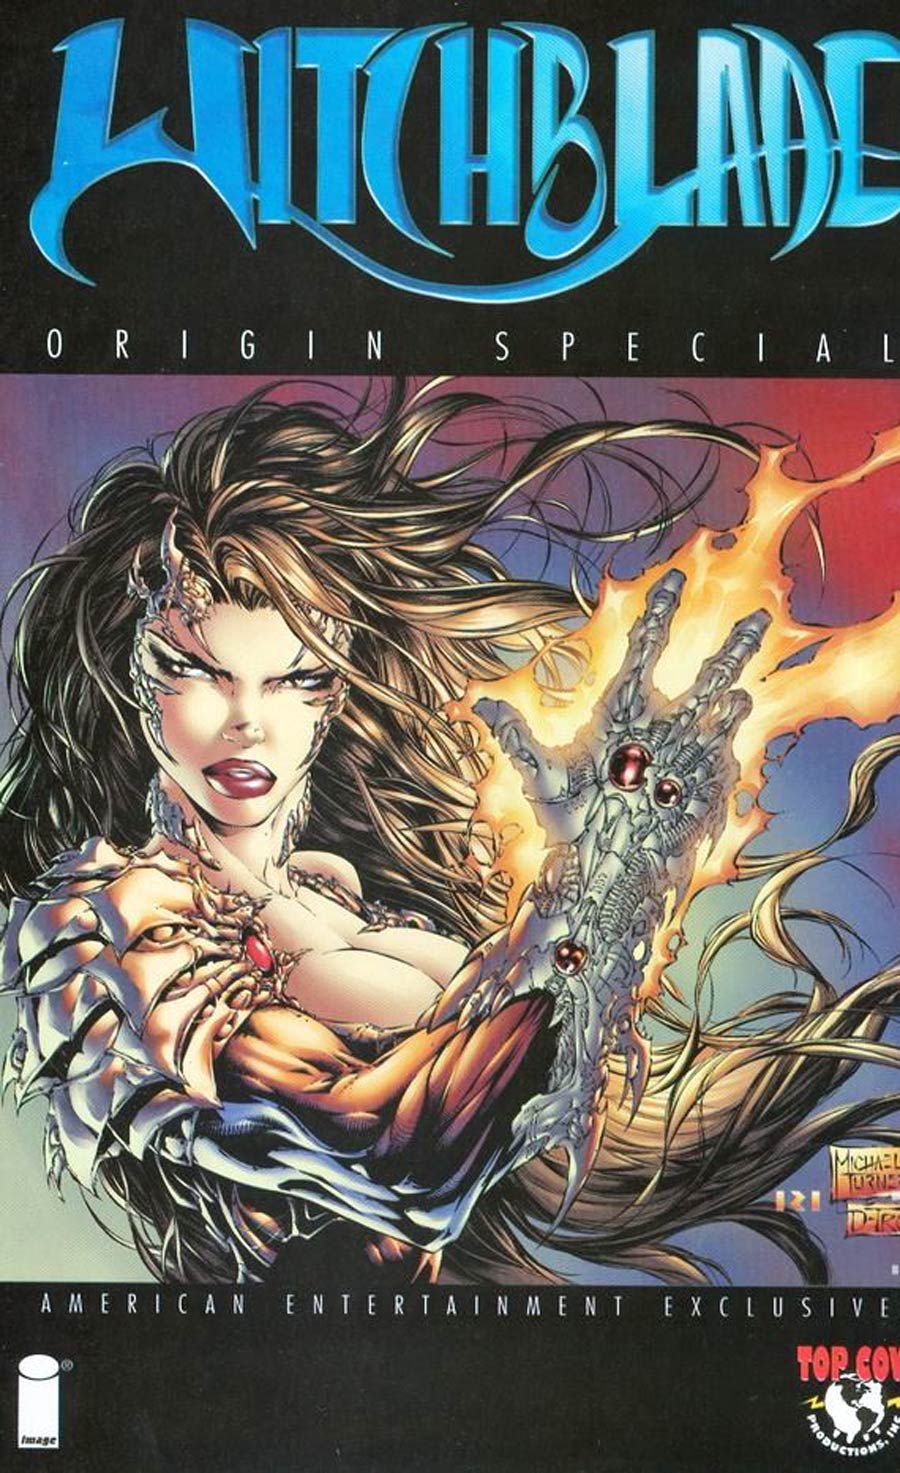 Witchblade Origin Special Cover A